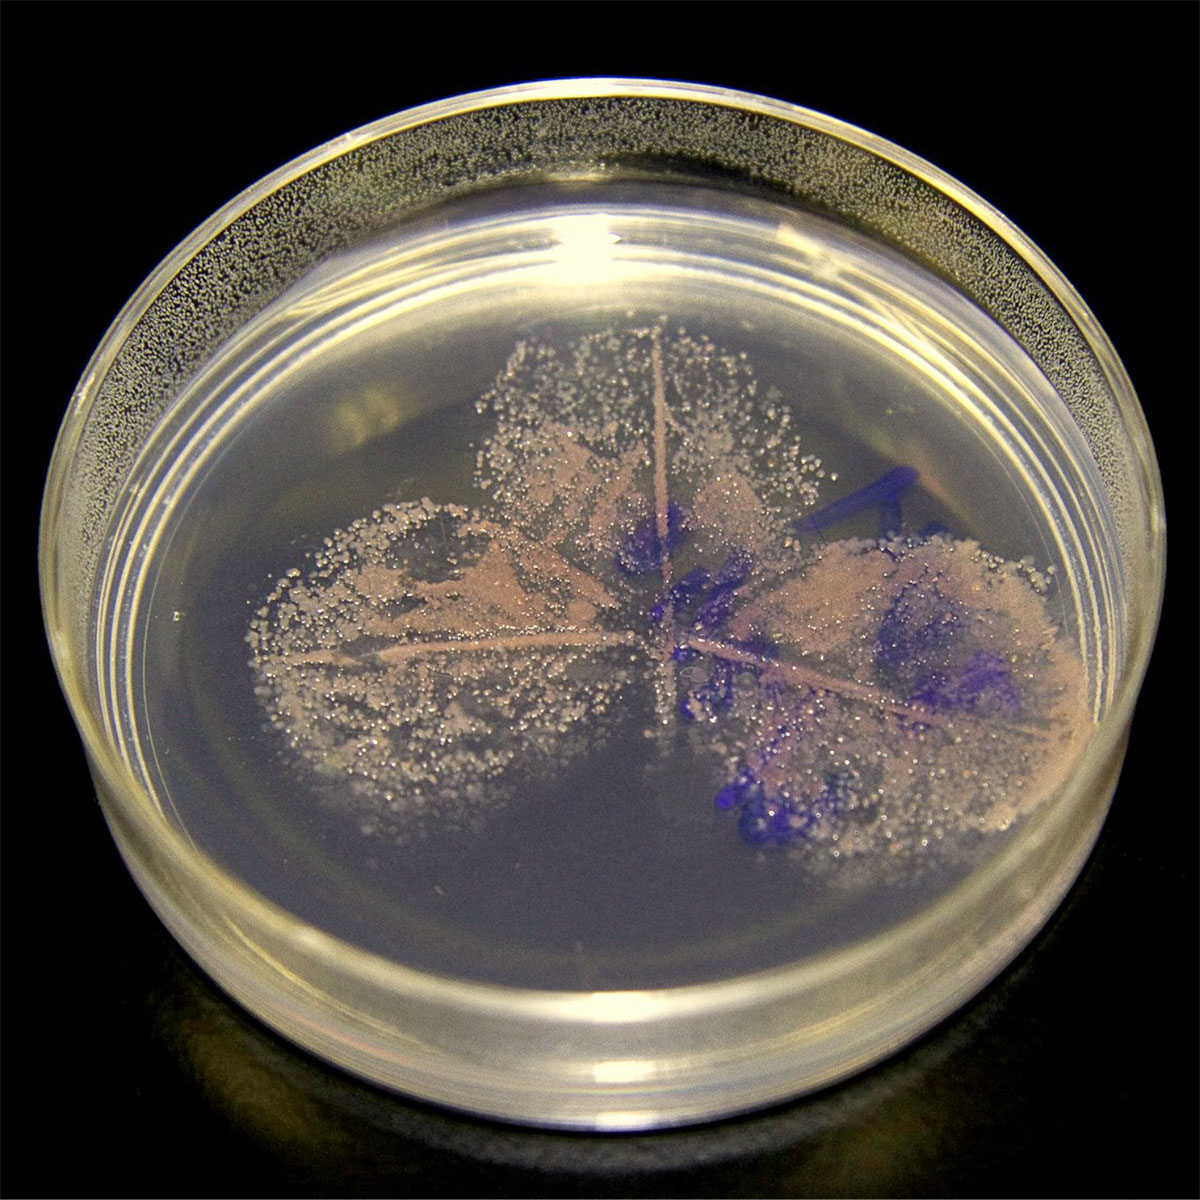 Methylobacterium strains in a petri dish